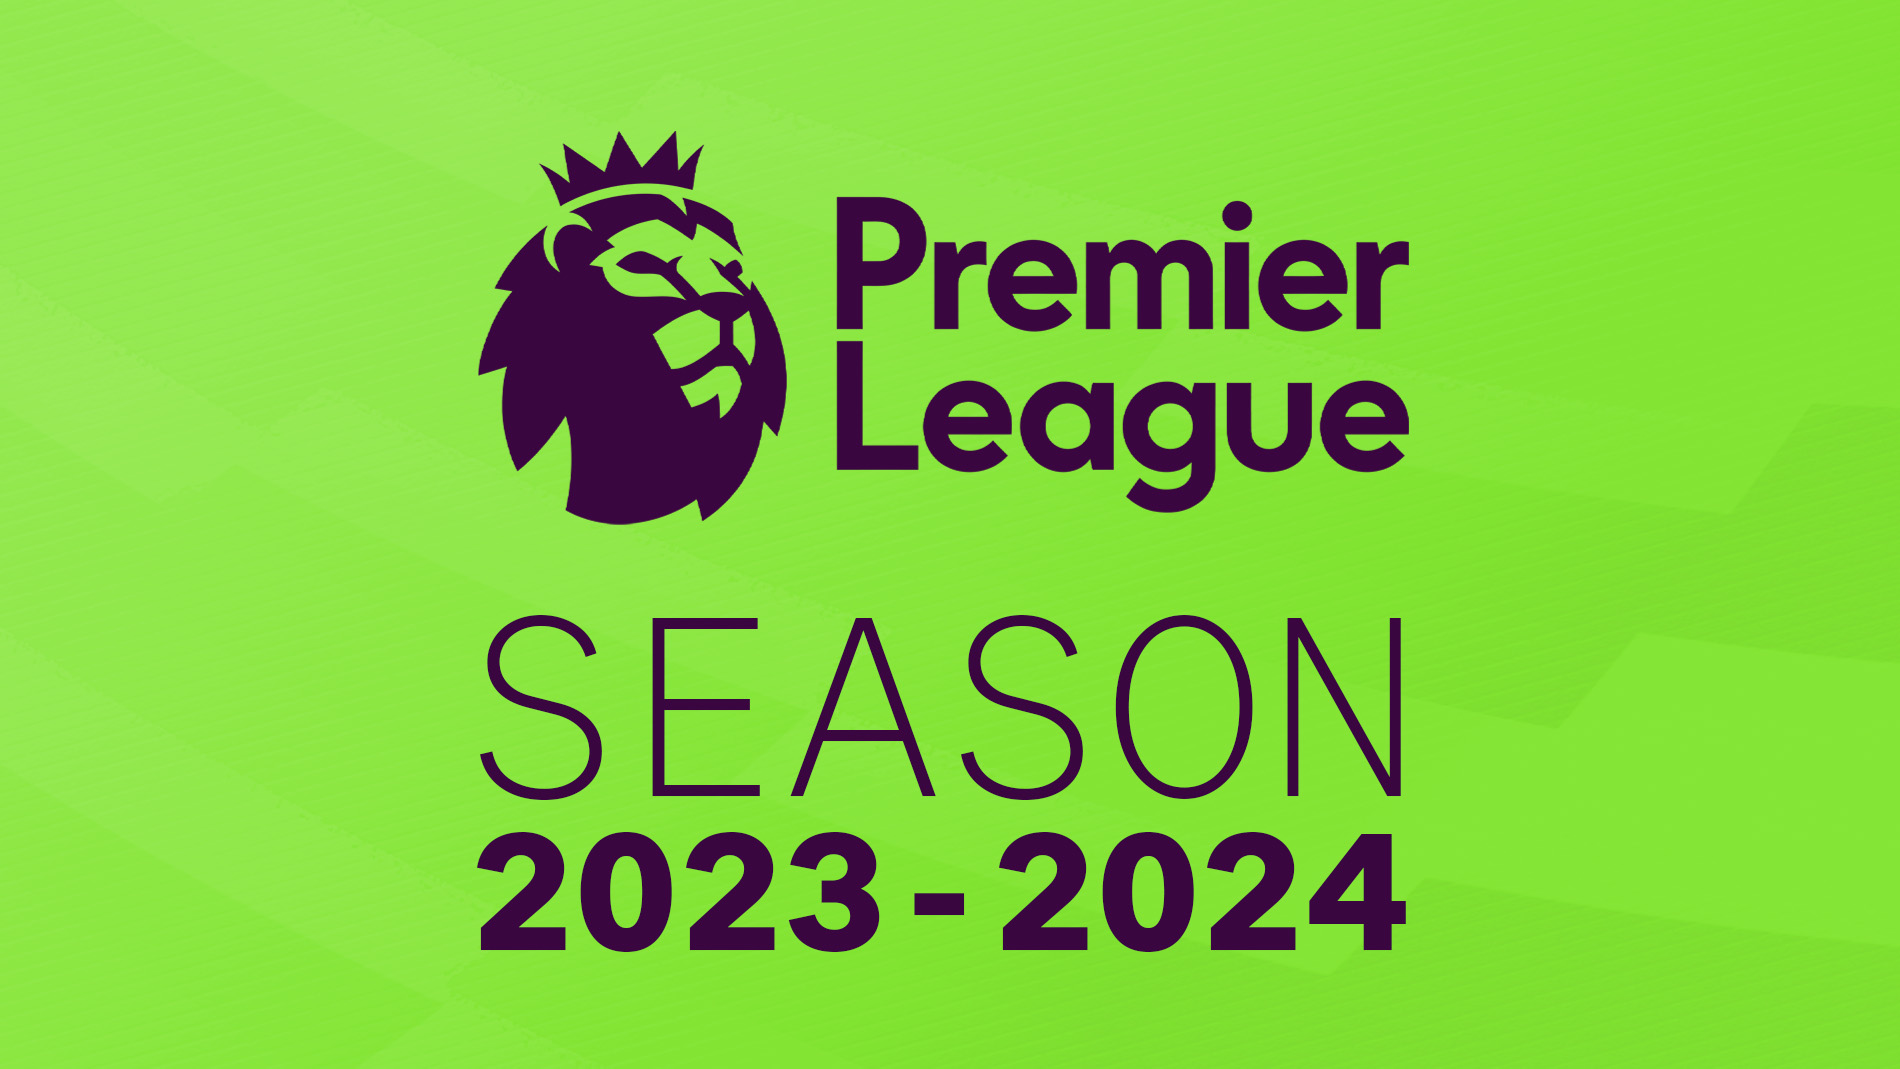 Guia da Premier League 2023/2024: Início, calendário, candidatos e